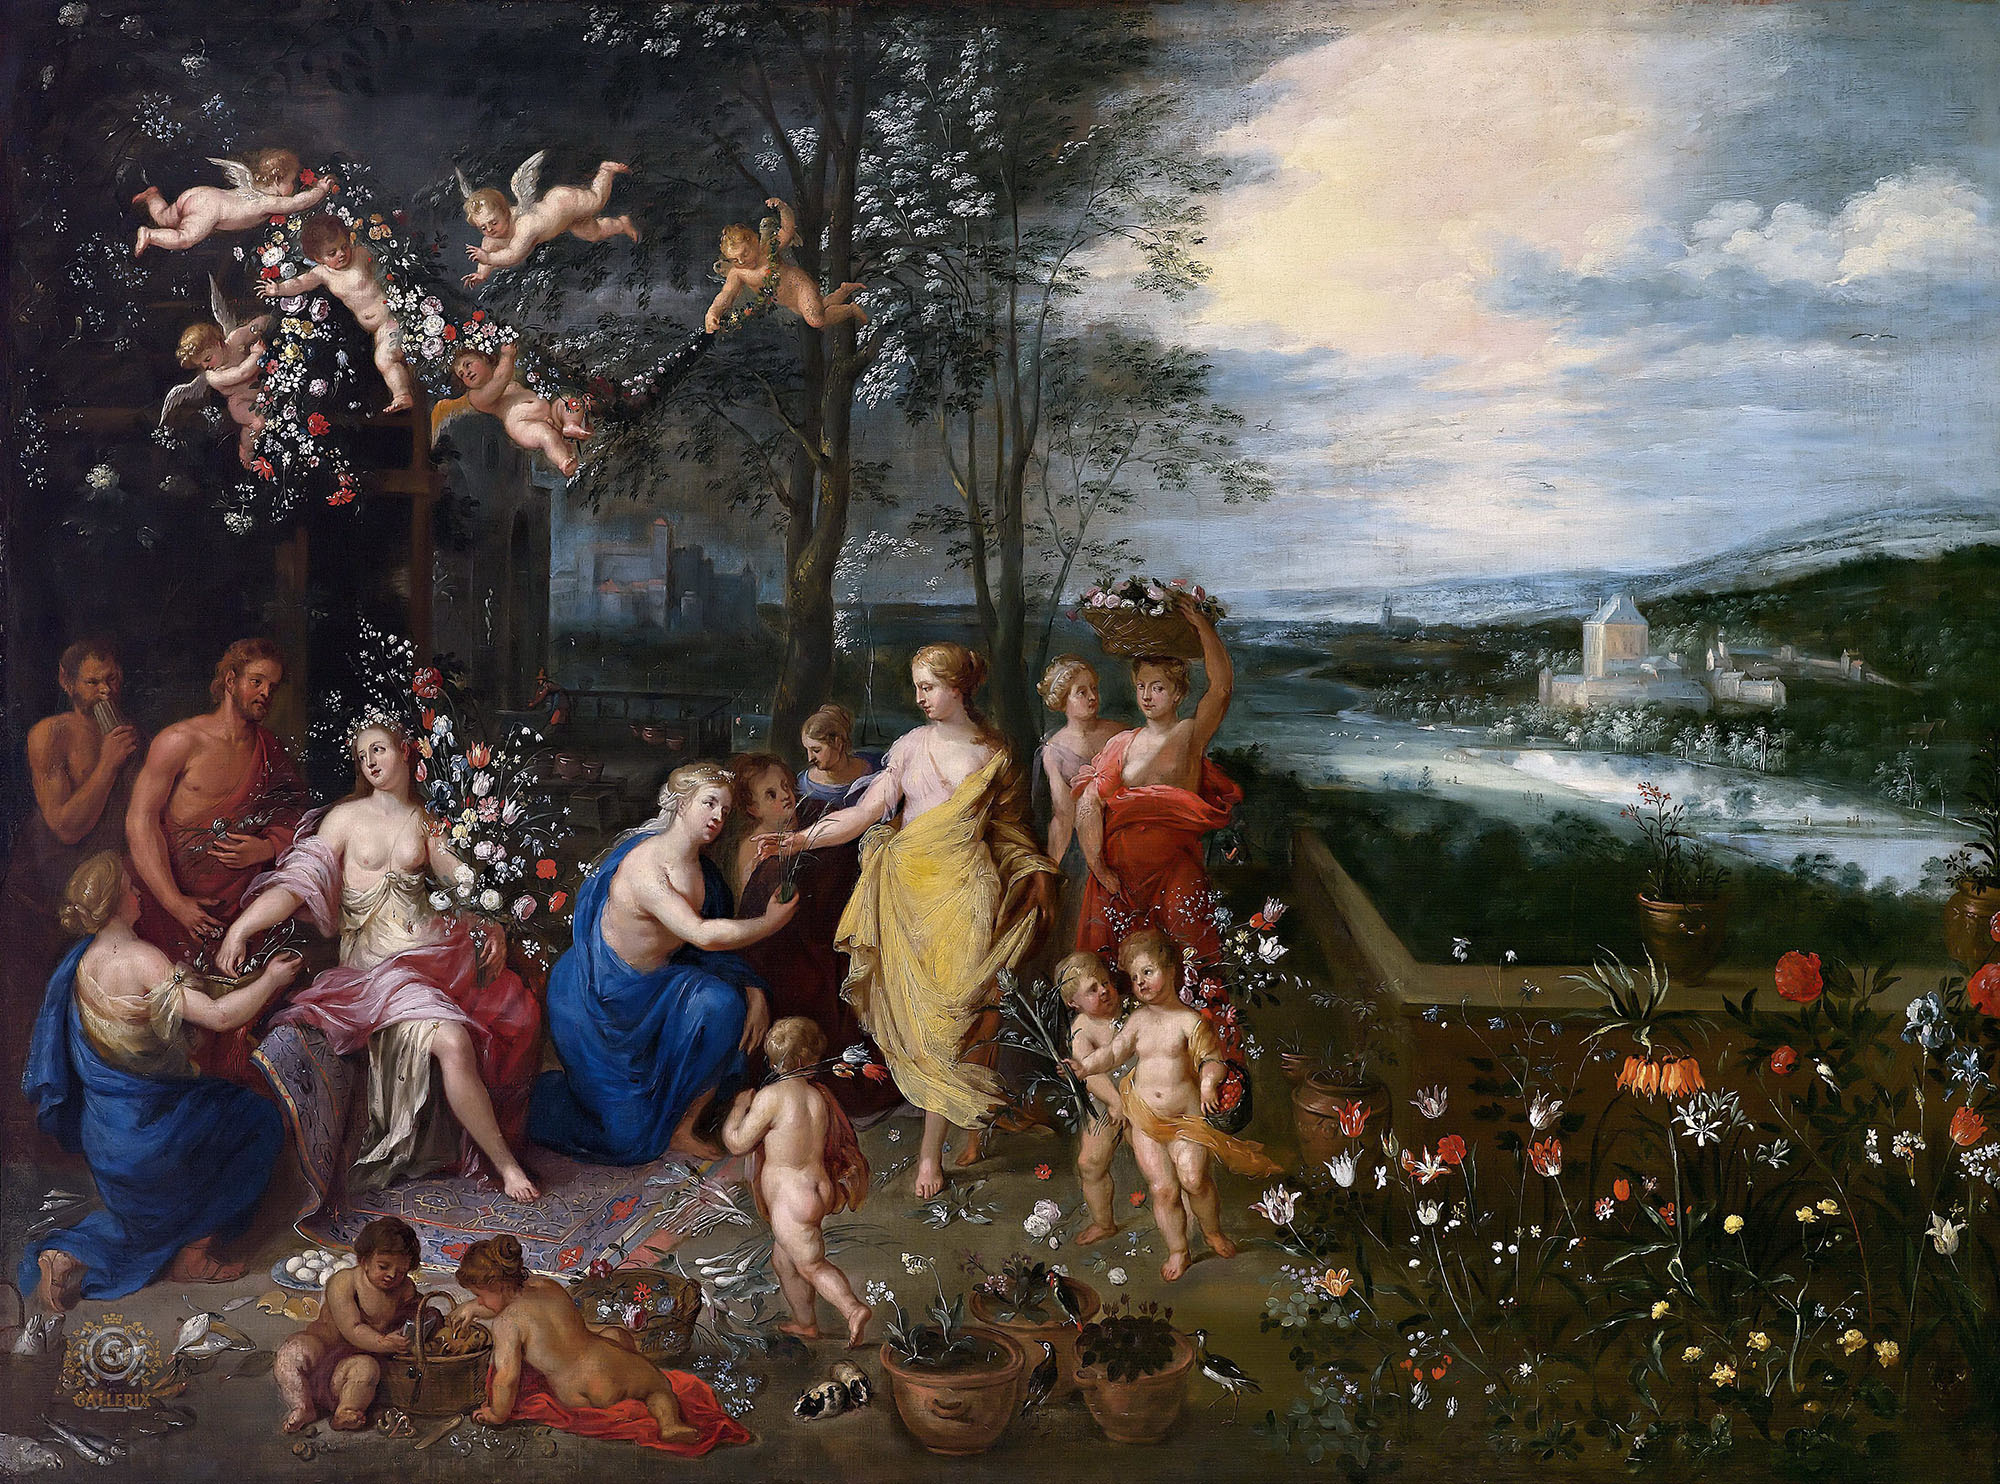 Ян Брейгель Старший. "Аллегория весны". 1616. Частная коллекция.